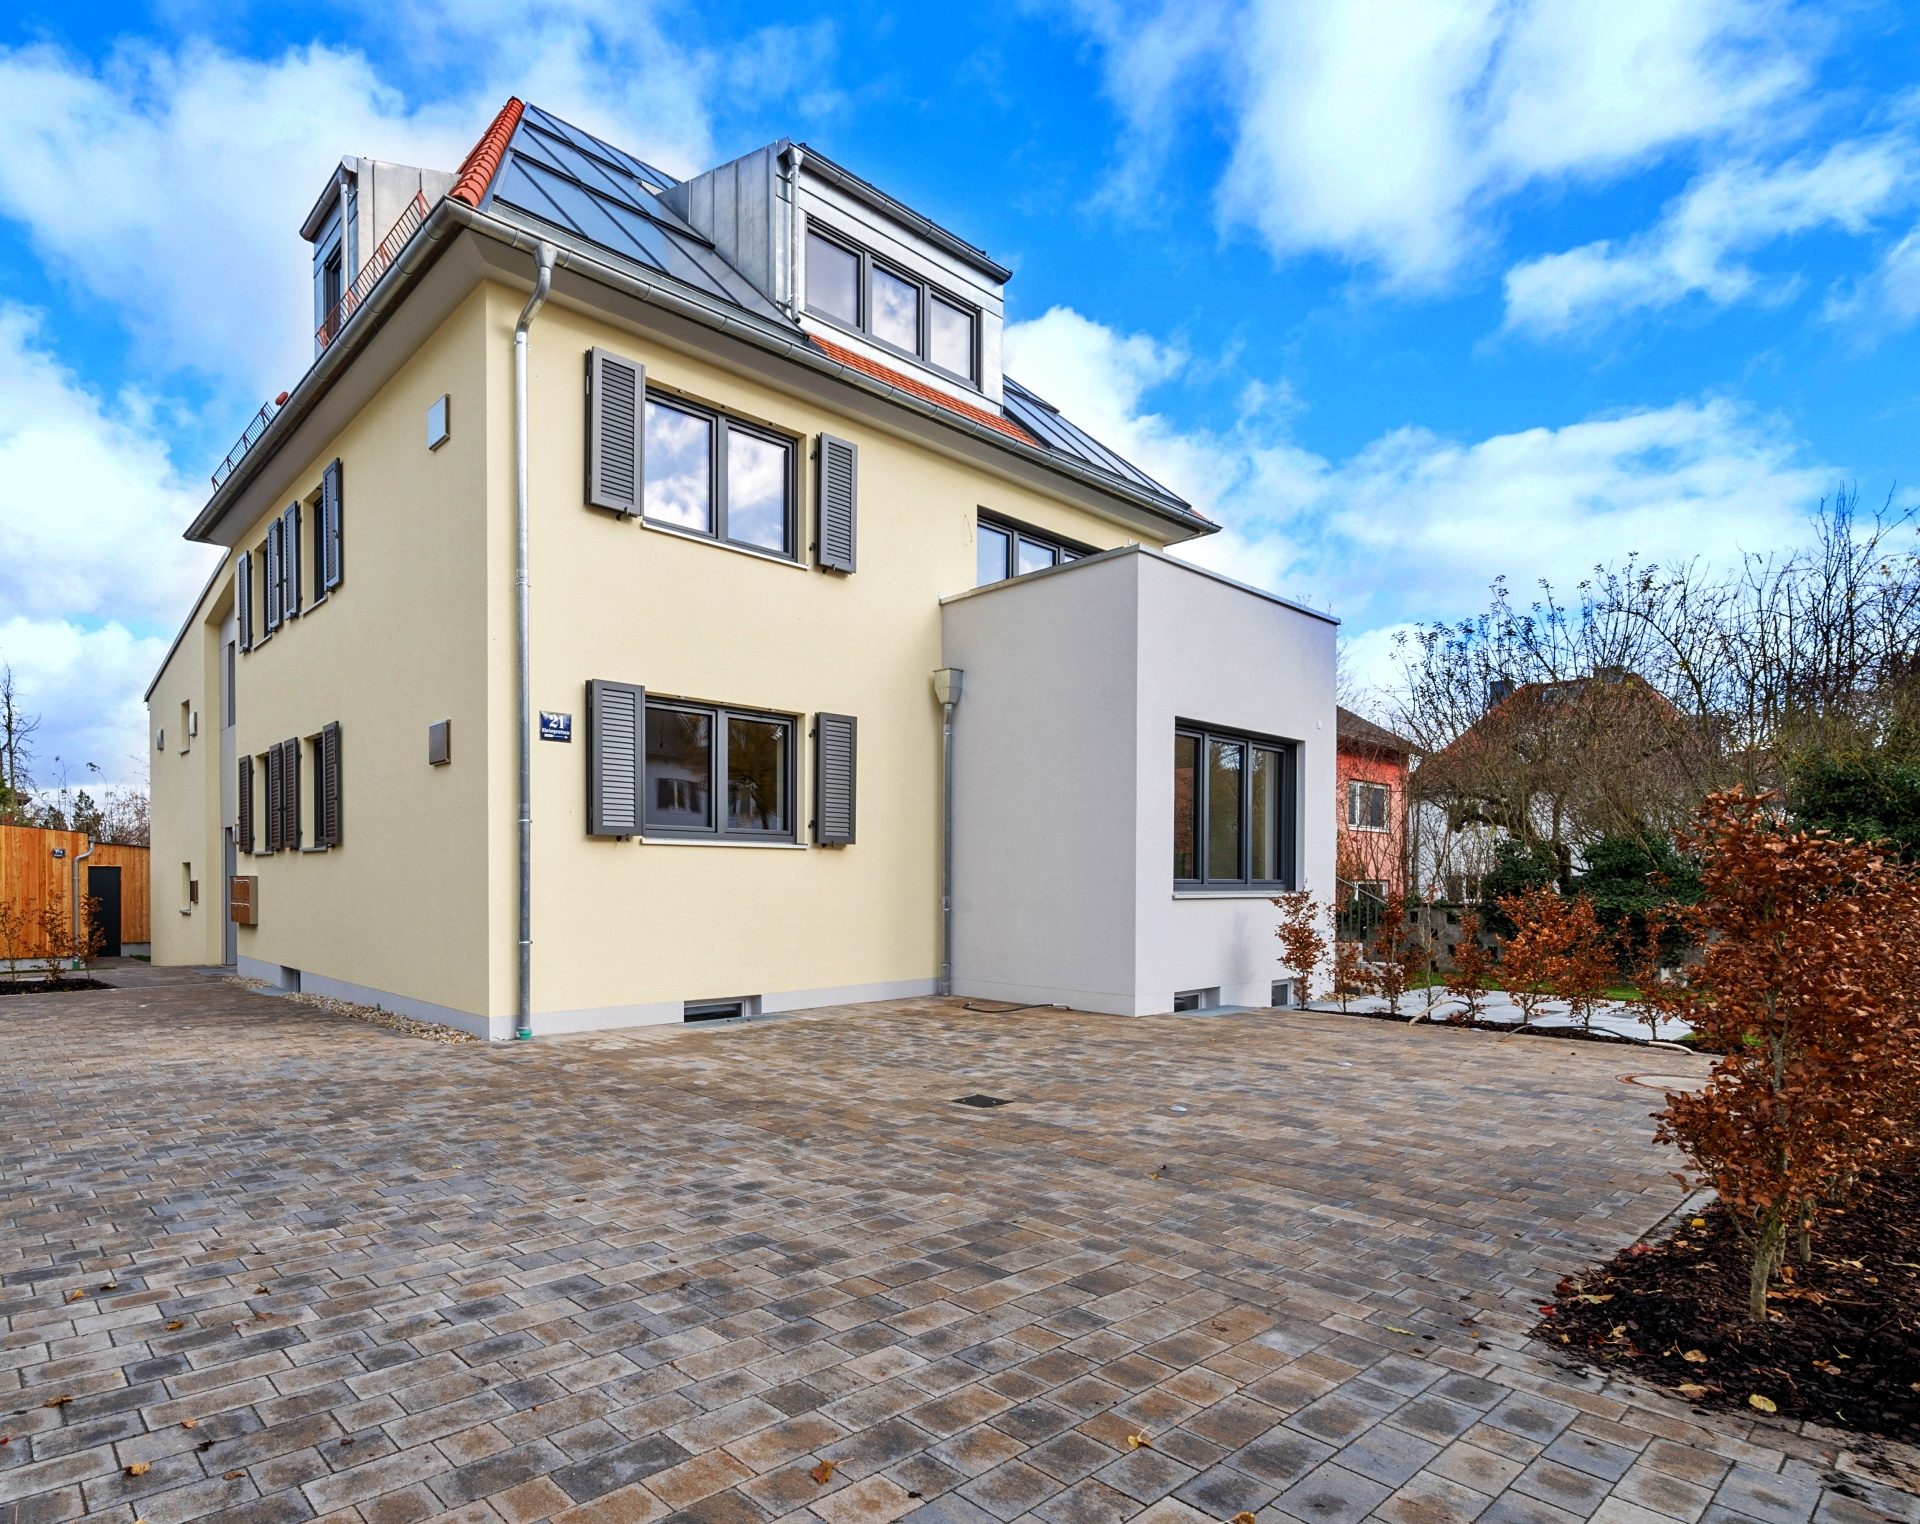 Immobilienangebot - Regensburg - Alle - Stilvolle 3-Zimmer-Neubauwohnung mit sonniger Terrasse und EBK in Kumpfmühl! Frei ab 01.01.!